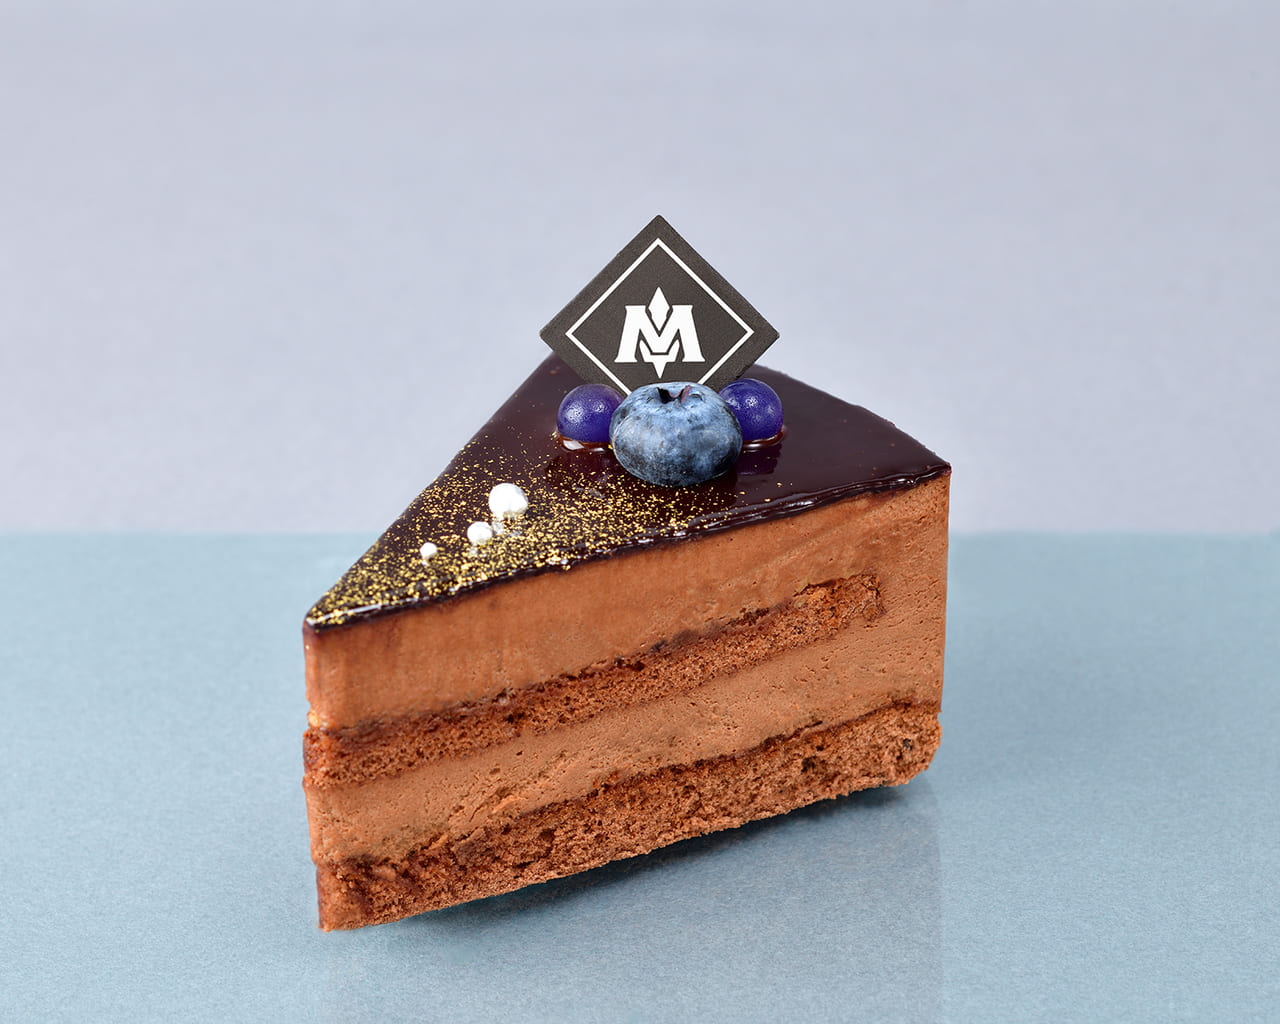 「カービィカフェ プチ」に新作「メタナイトの気高きチョコレートケーキ」が11月29日より発売決定_006